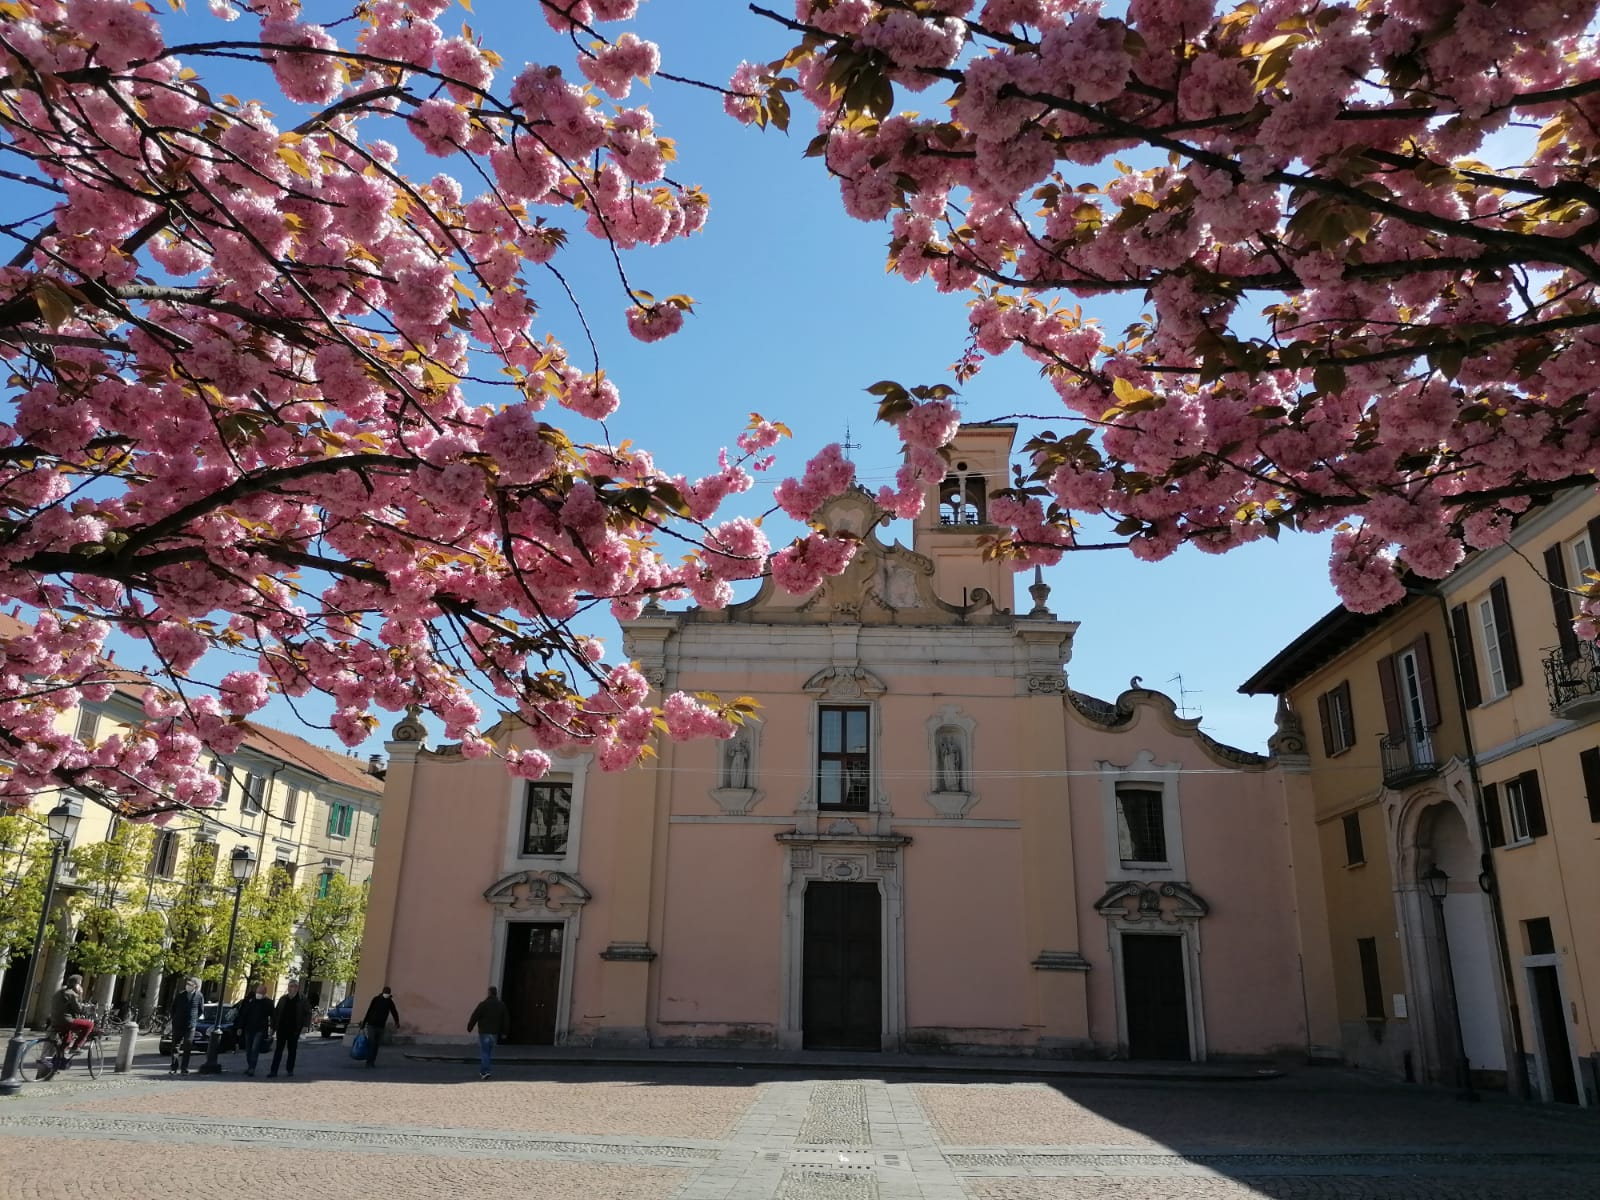 Chiese aperte a Saronno: Santi Pietro e Paolo, archivio storico e chiesa di San Francesco in un percorso storico